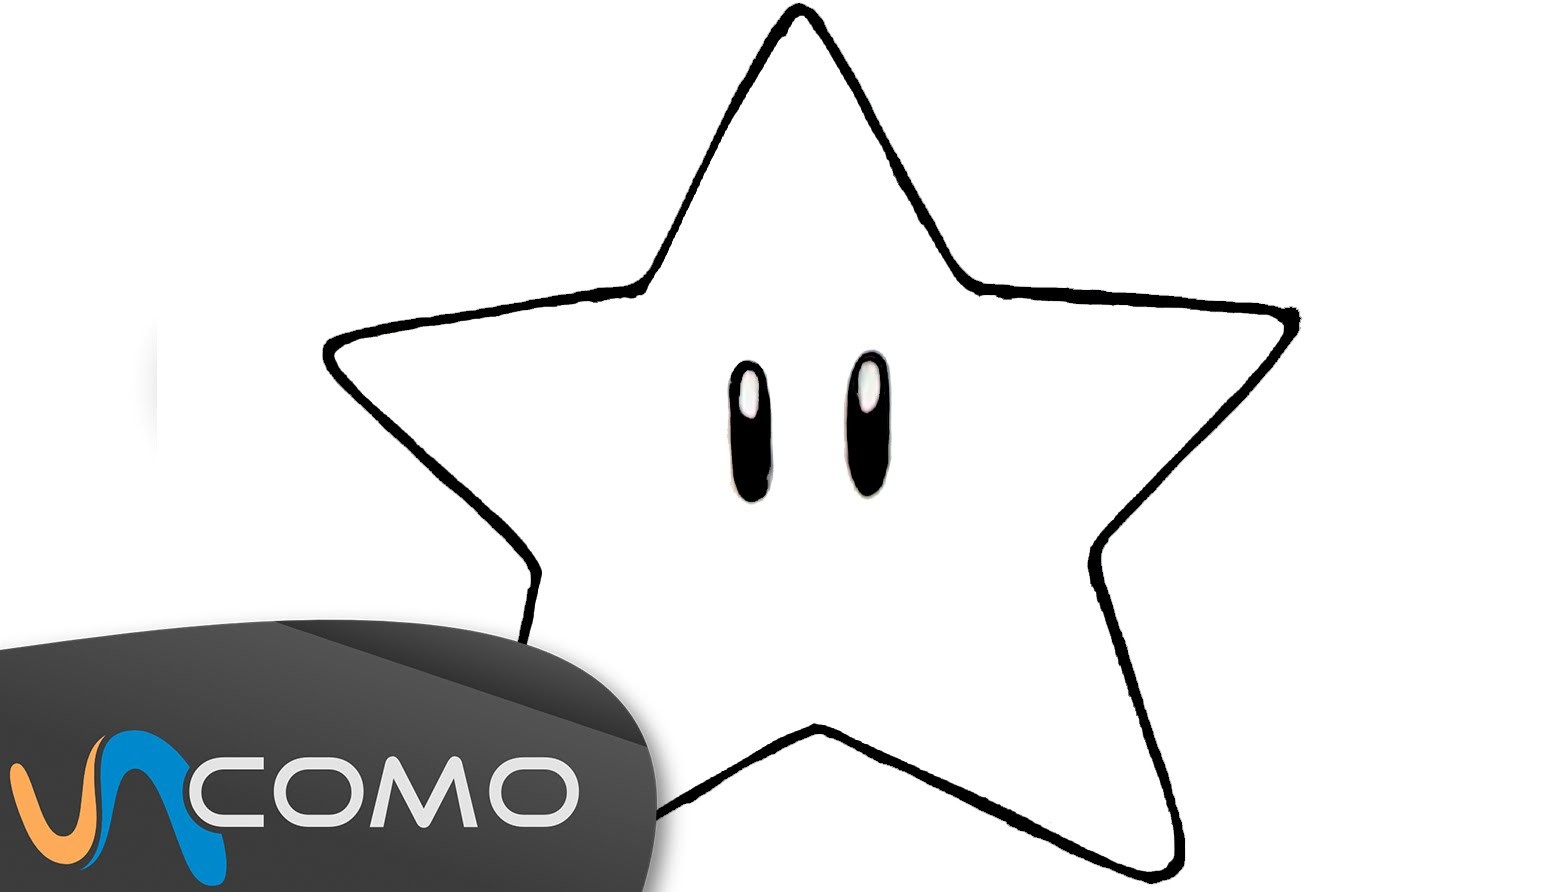 Dibujar una estrella de forma sencilla